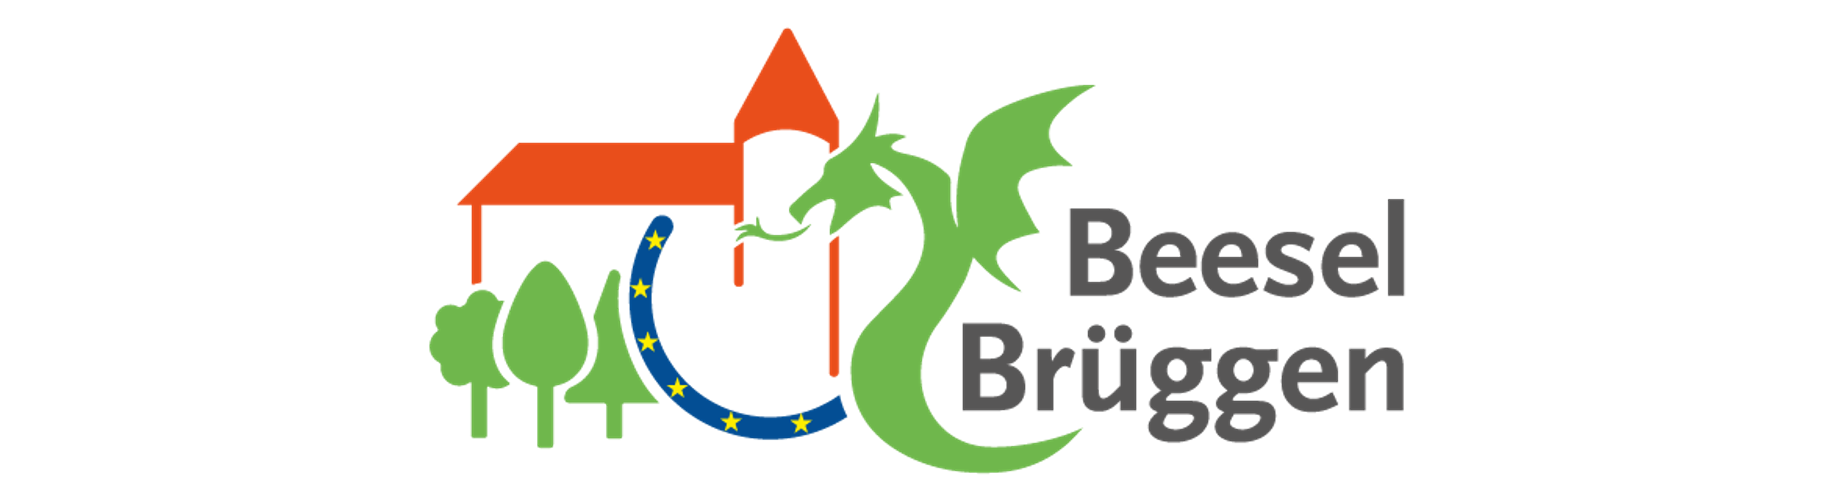 Logo Beesel-Brüggen: Umriss Burg orange, unter linker Teil der Burg drei grüne Bäume, rechts davon blauer Halbkreis mit gelben Sternen als Zeichen der Europäischen Union, rechts von der Burg grüner Drache, rechts Schriftzug "Beesel Brüggen"